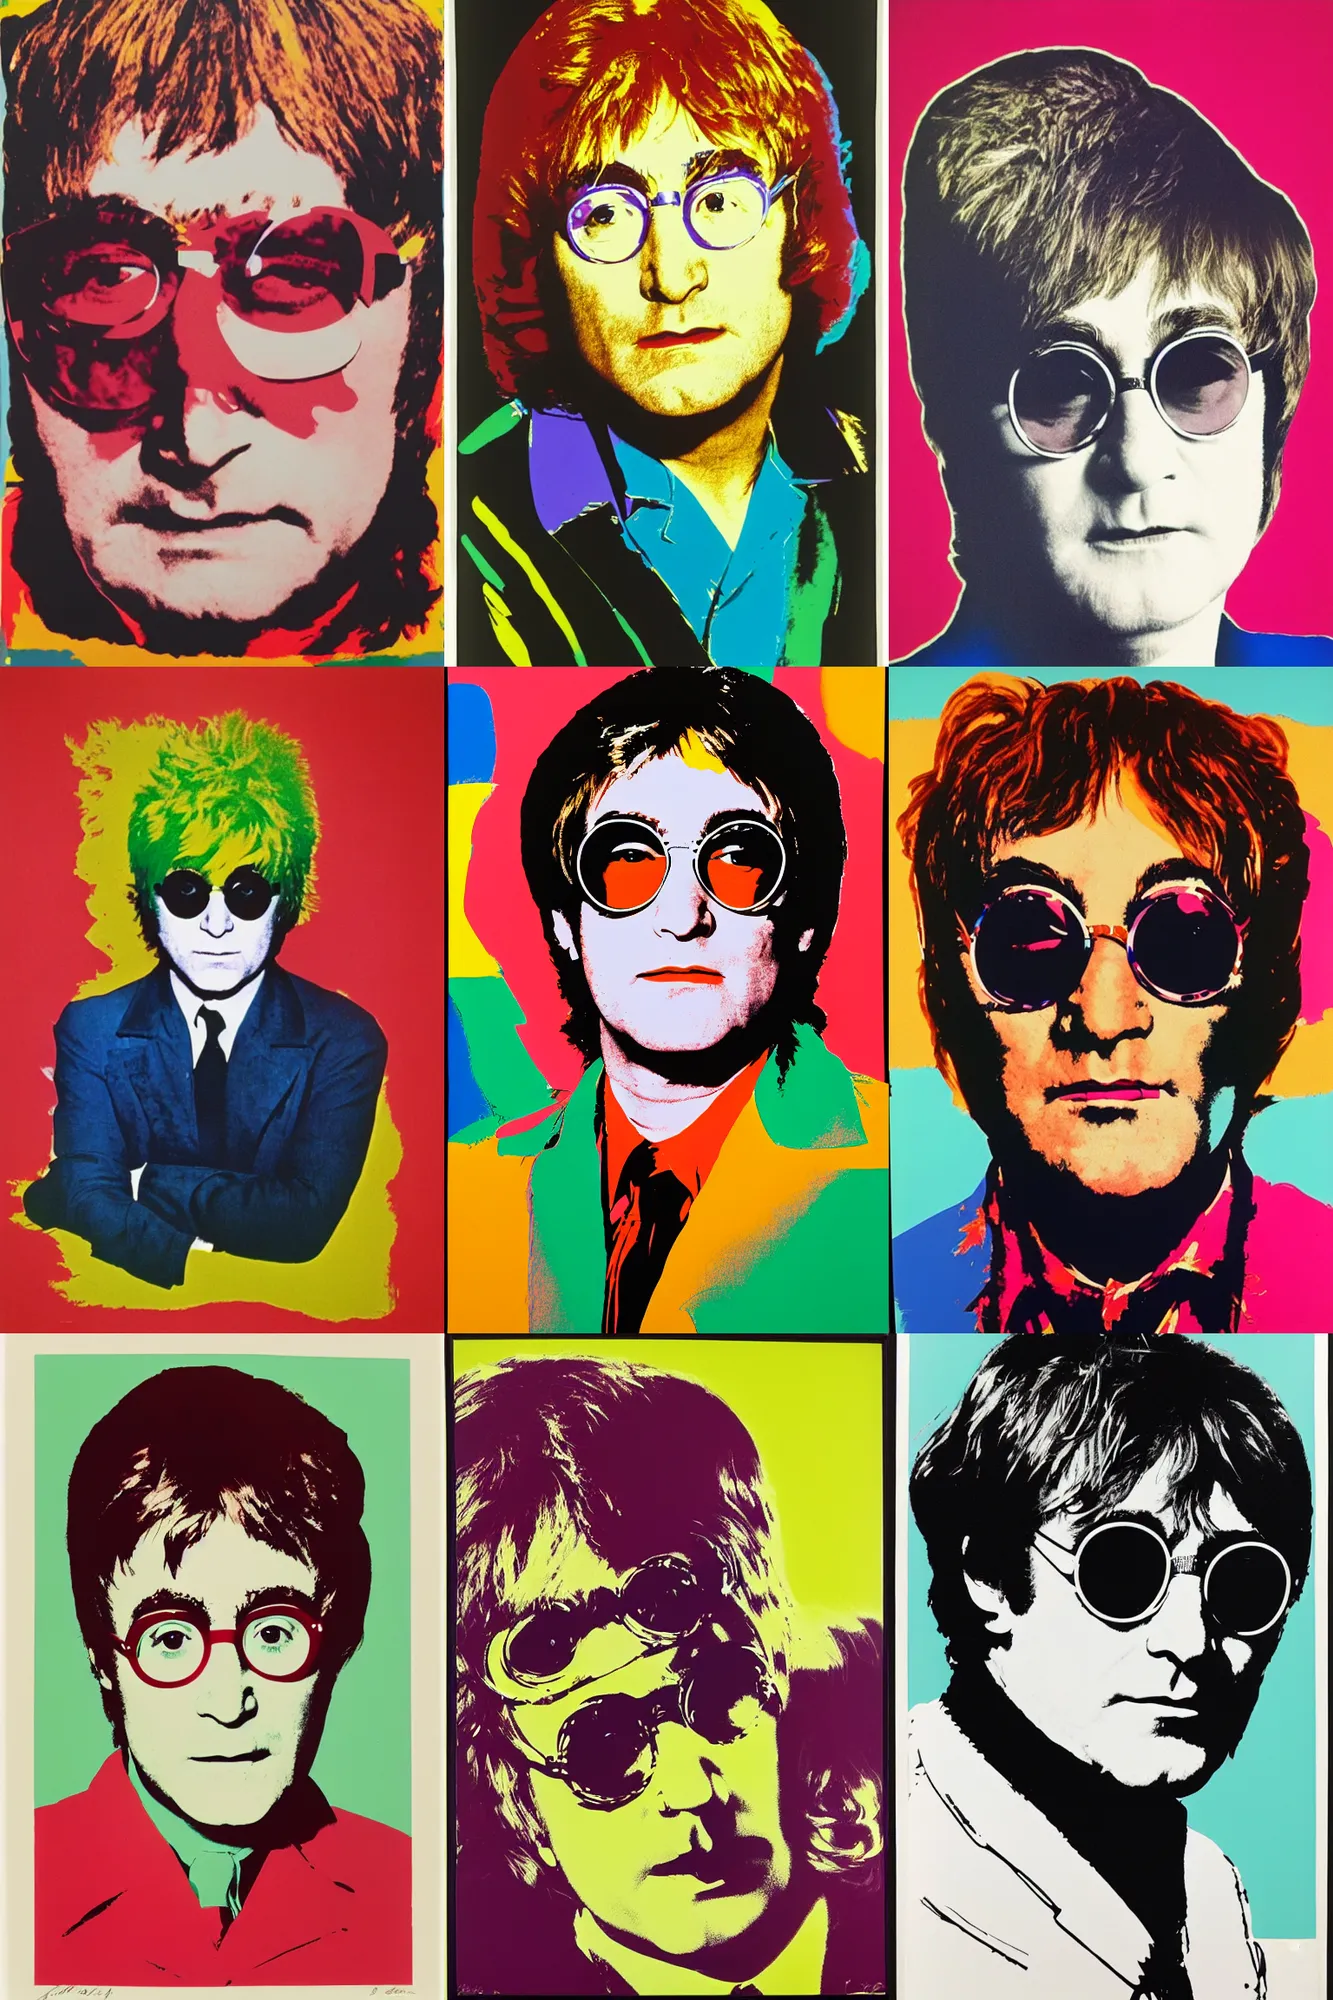 Prompt: Portrait of Elton John Lennon in 1970 by Andy Warhol